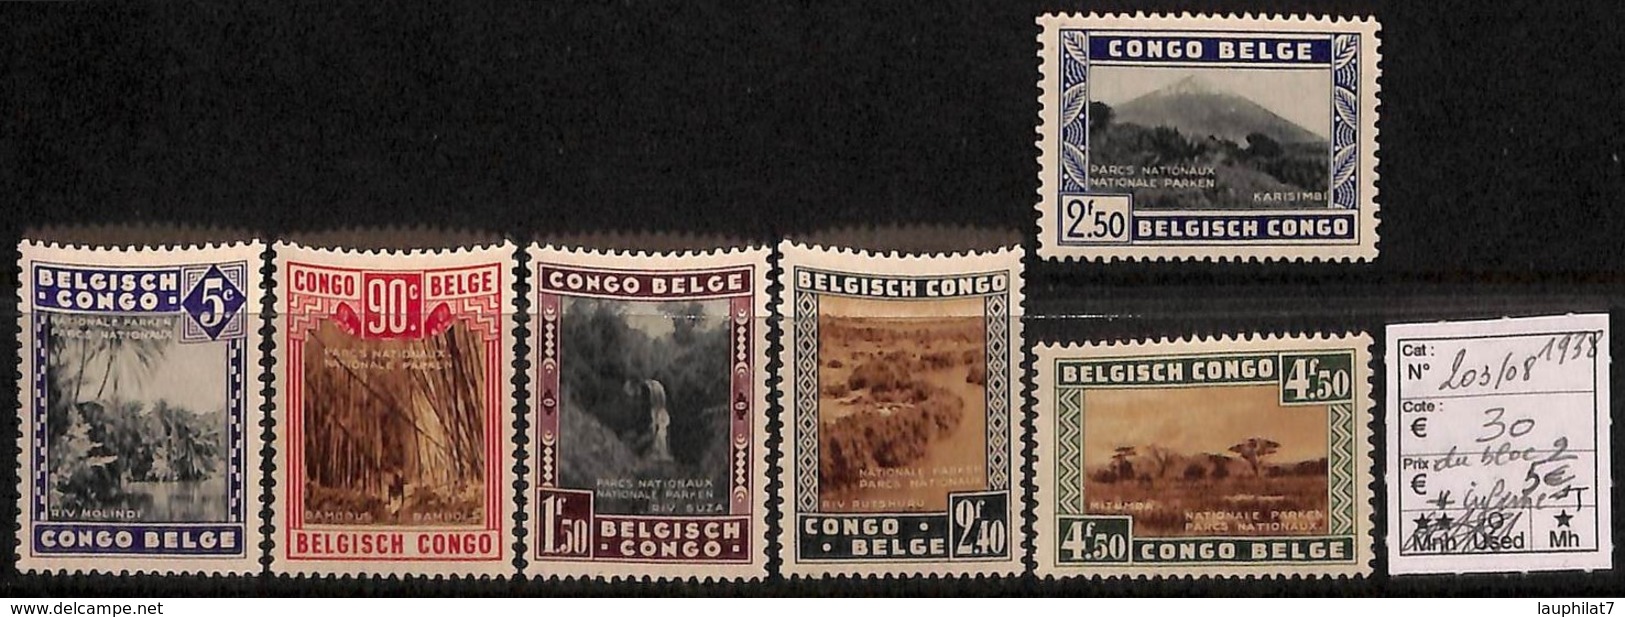 [814487]TB//*/Mh-c:30e-Congo Belge        1938 - N° 203/08, Parcs Nationaux, Paysages, SC, */mh Légère - Ungebraucht